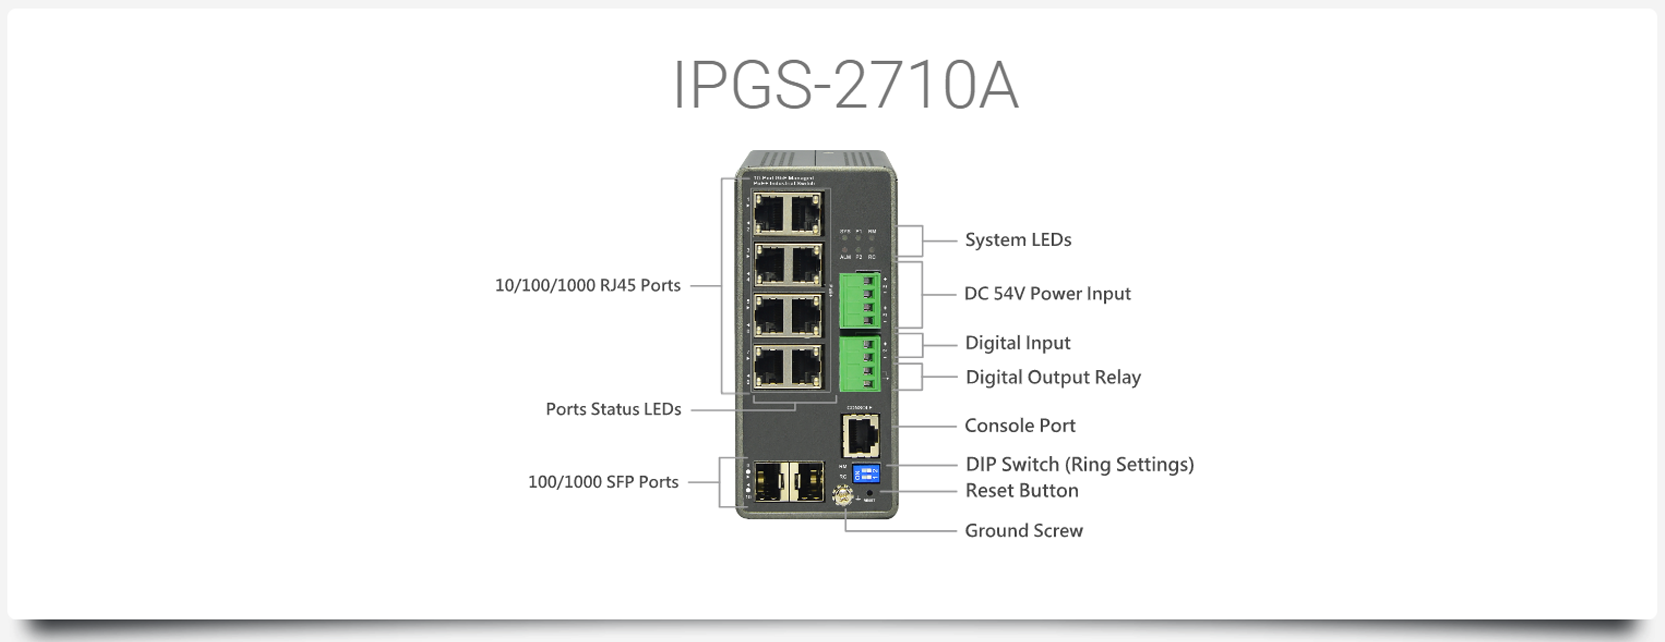 IPGS-2710A